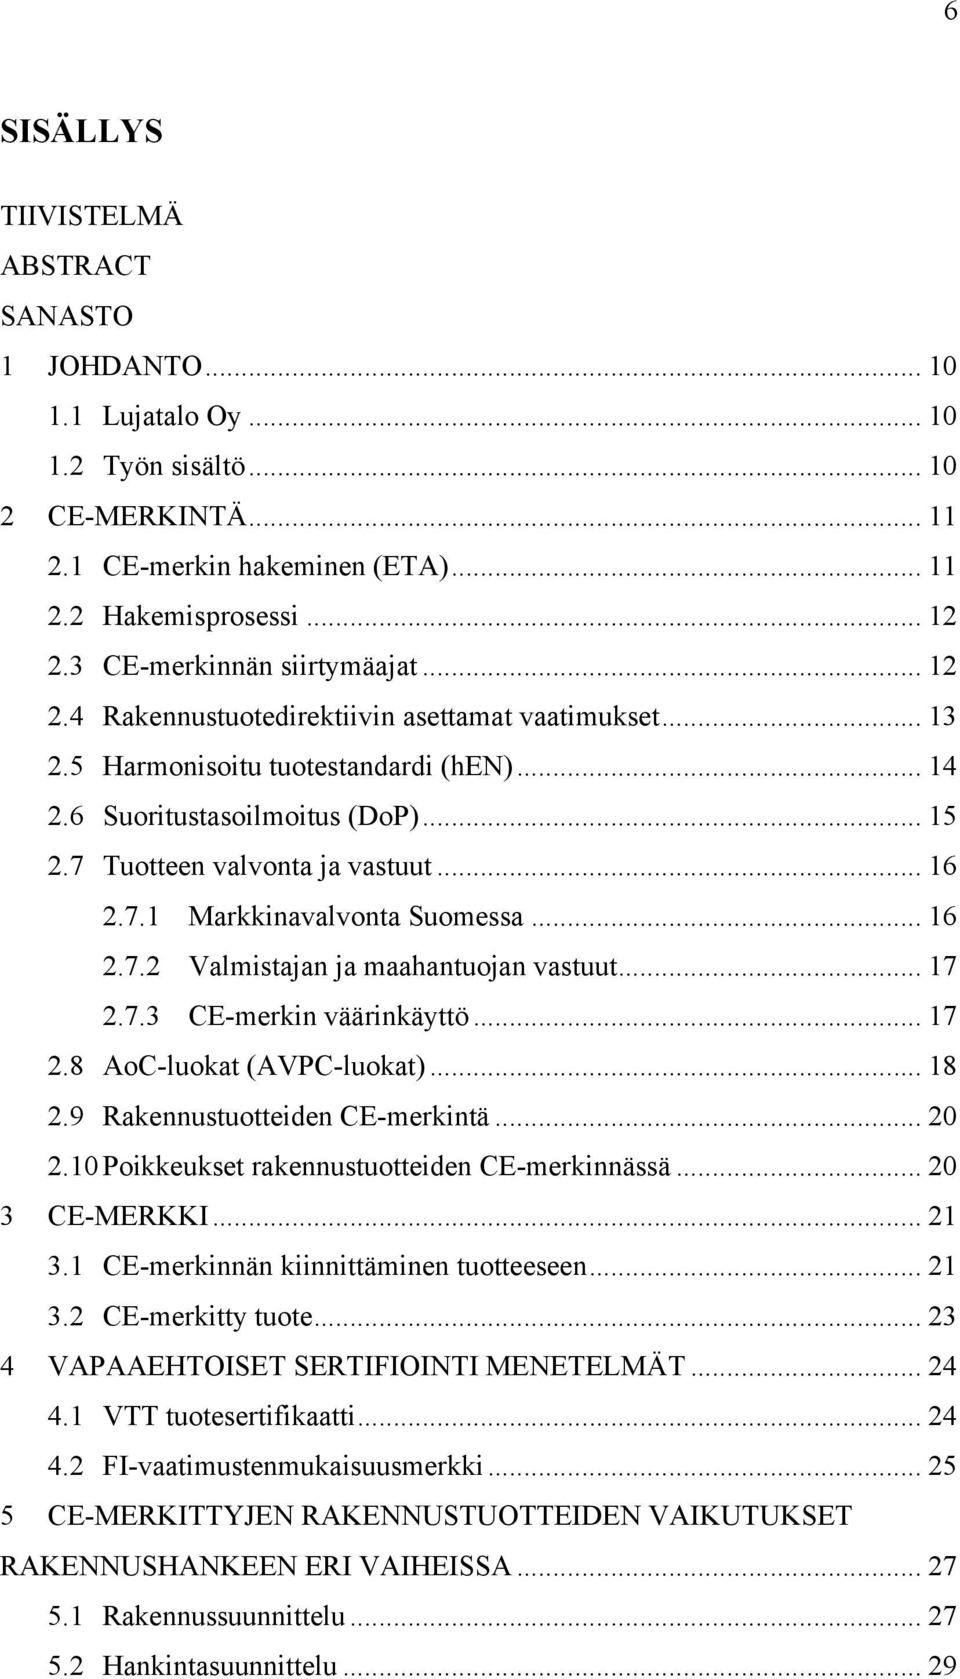 7 Tuotteen valvonta ja vastuut... 16 2.7.1 Markkinavalvonta Suomessa... 16 2.7.2 Valmistajan ja maahantuojan vastuut... 17 2.7.3 CE-merkin väärinkäyttö... 17 2.8 AoC-luokat (AVPC-luokat)... 18 2.